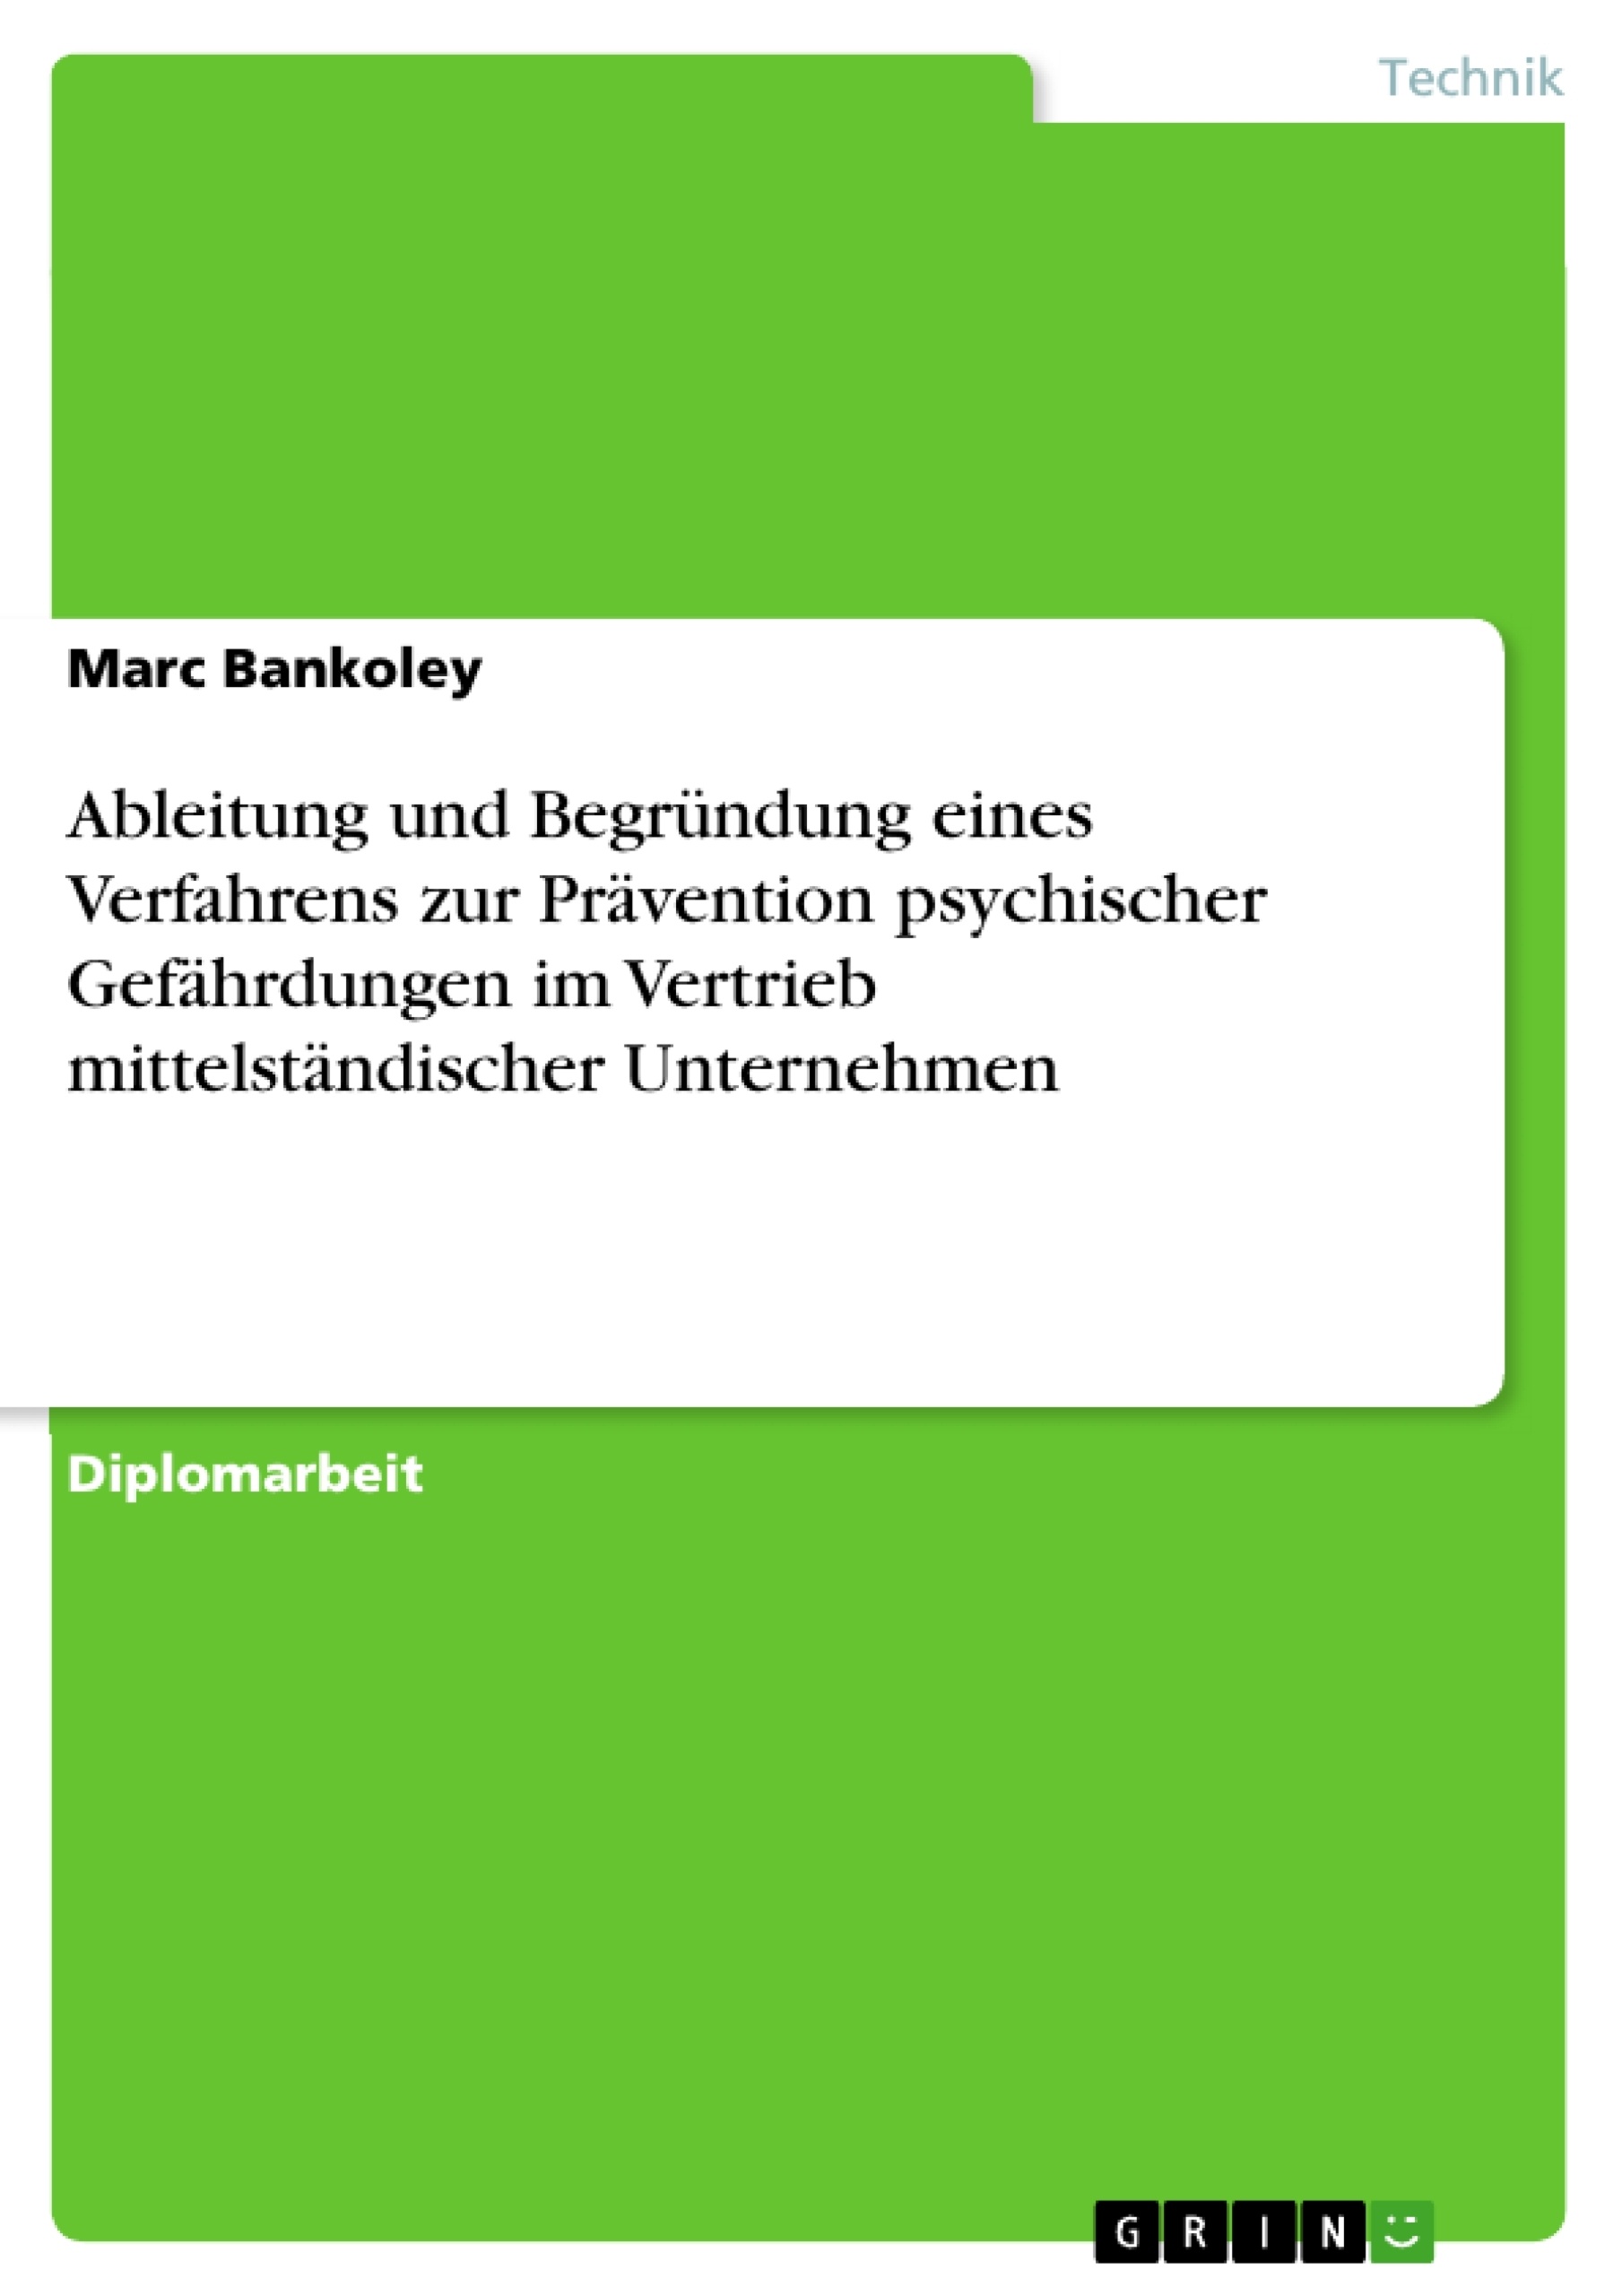 Titre: Ableitung und Begründung eines Verfahrens zur Prävention psychischer Gefährdungen im Vertrieb mittelständischer Unternehmen